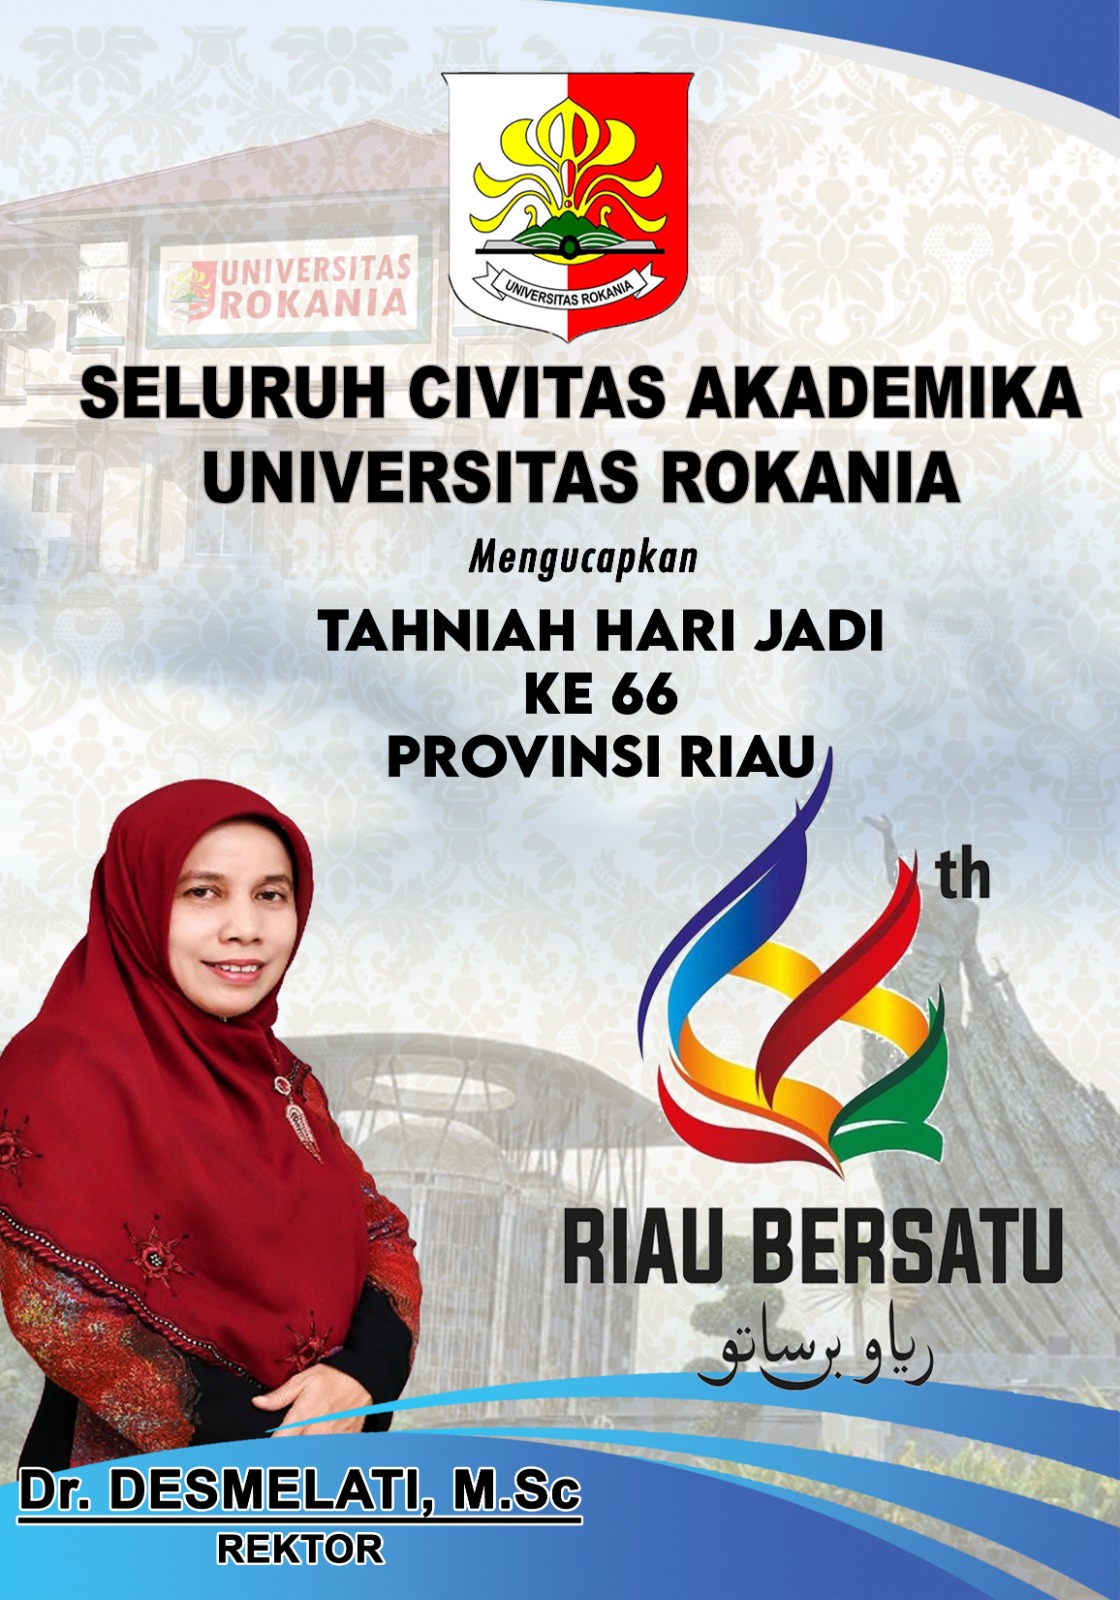 Seluruh Civitas Akademika Universitas Rokania Mengucapkan Tahniah Hari Jadi Provinsi Riau ke 66